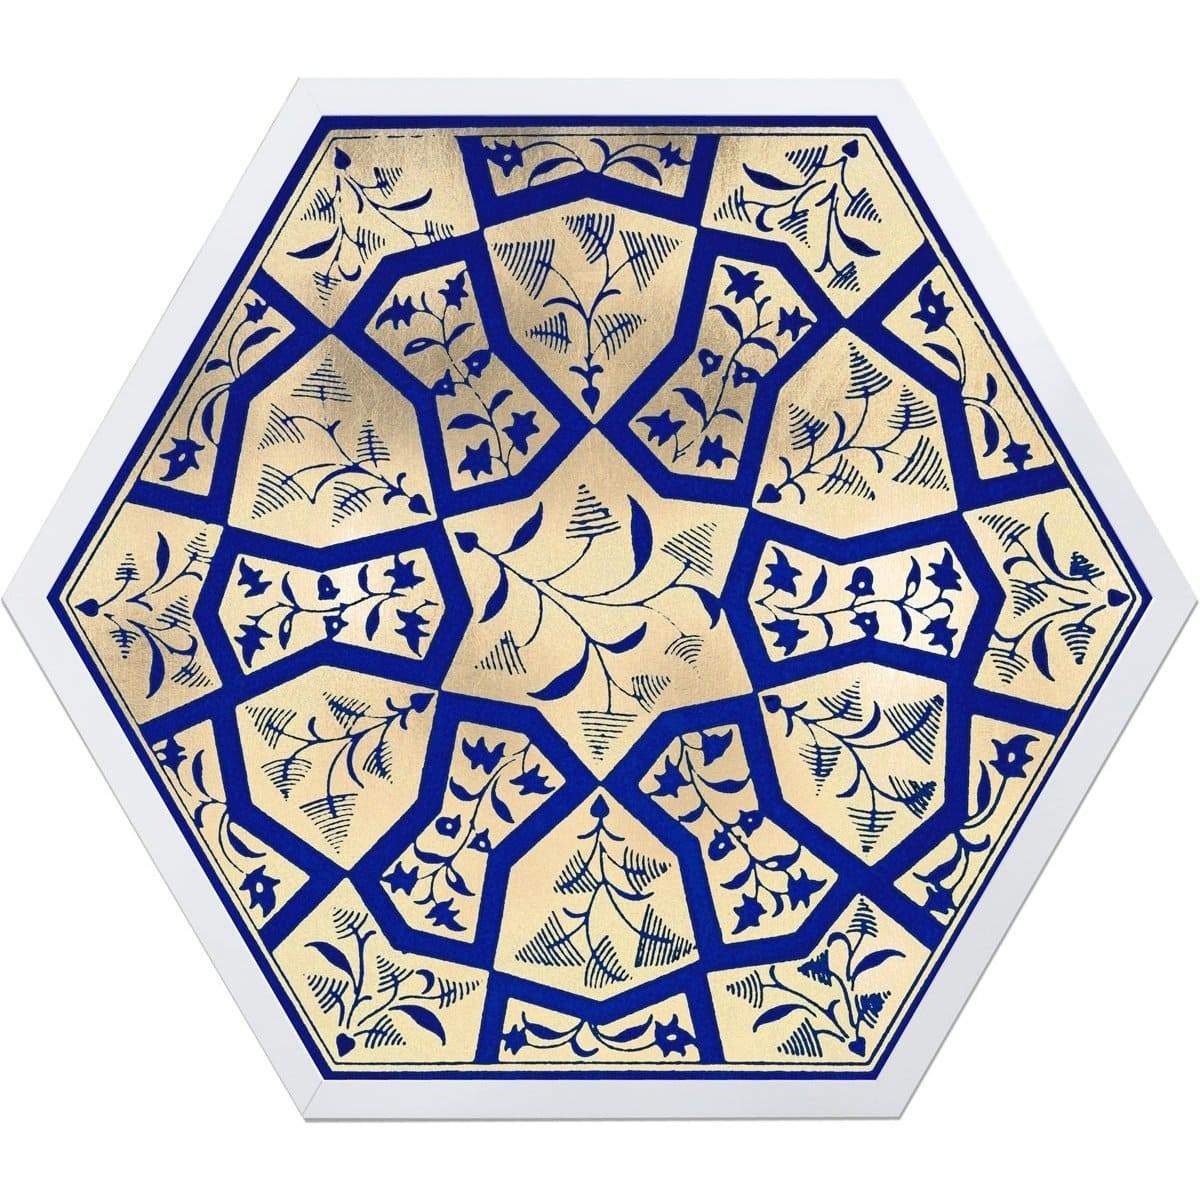 Natural Curiosities Hexagon Moroccan Tile Design No. 1 Wall natural-curiosities-hexagon-moroccan-tile-design-1